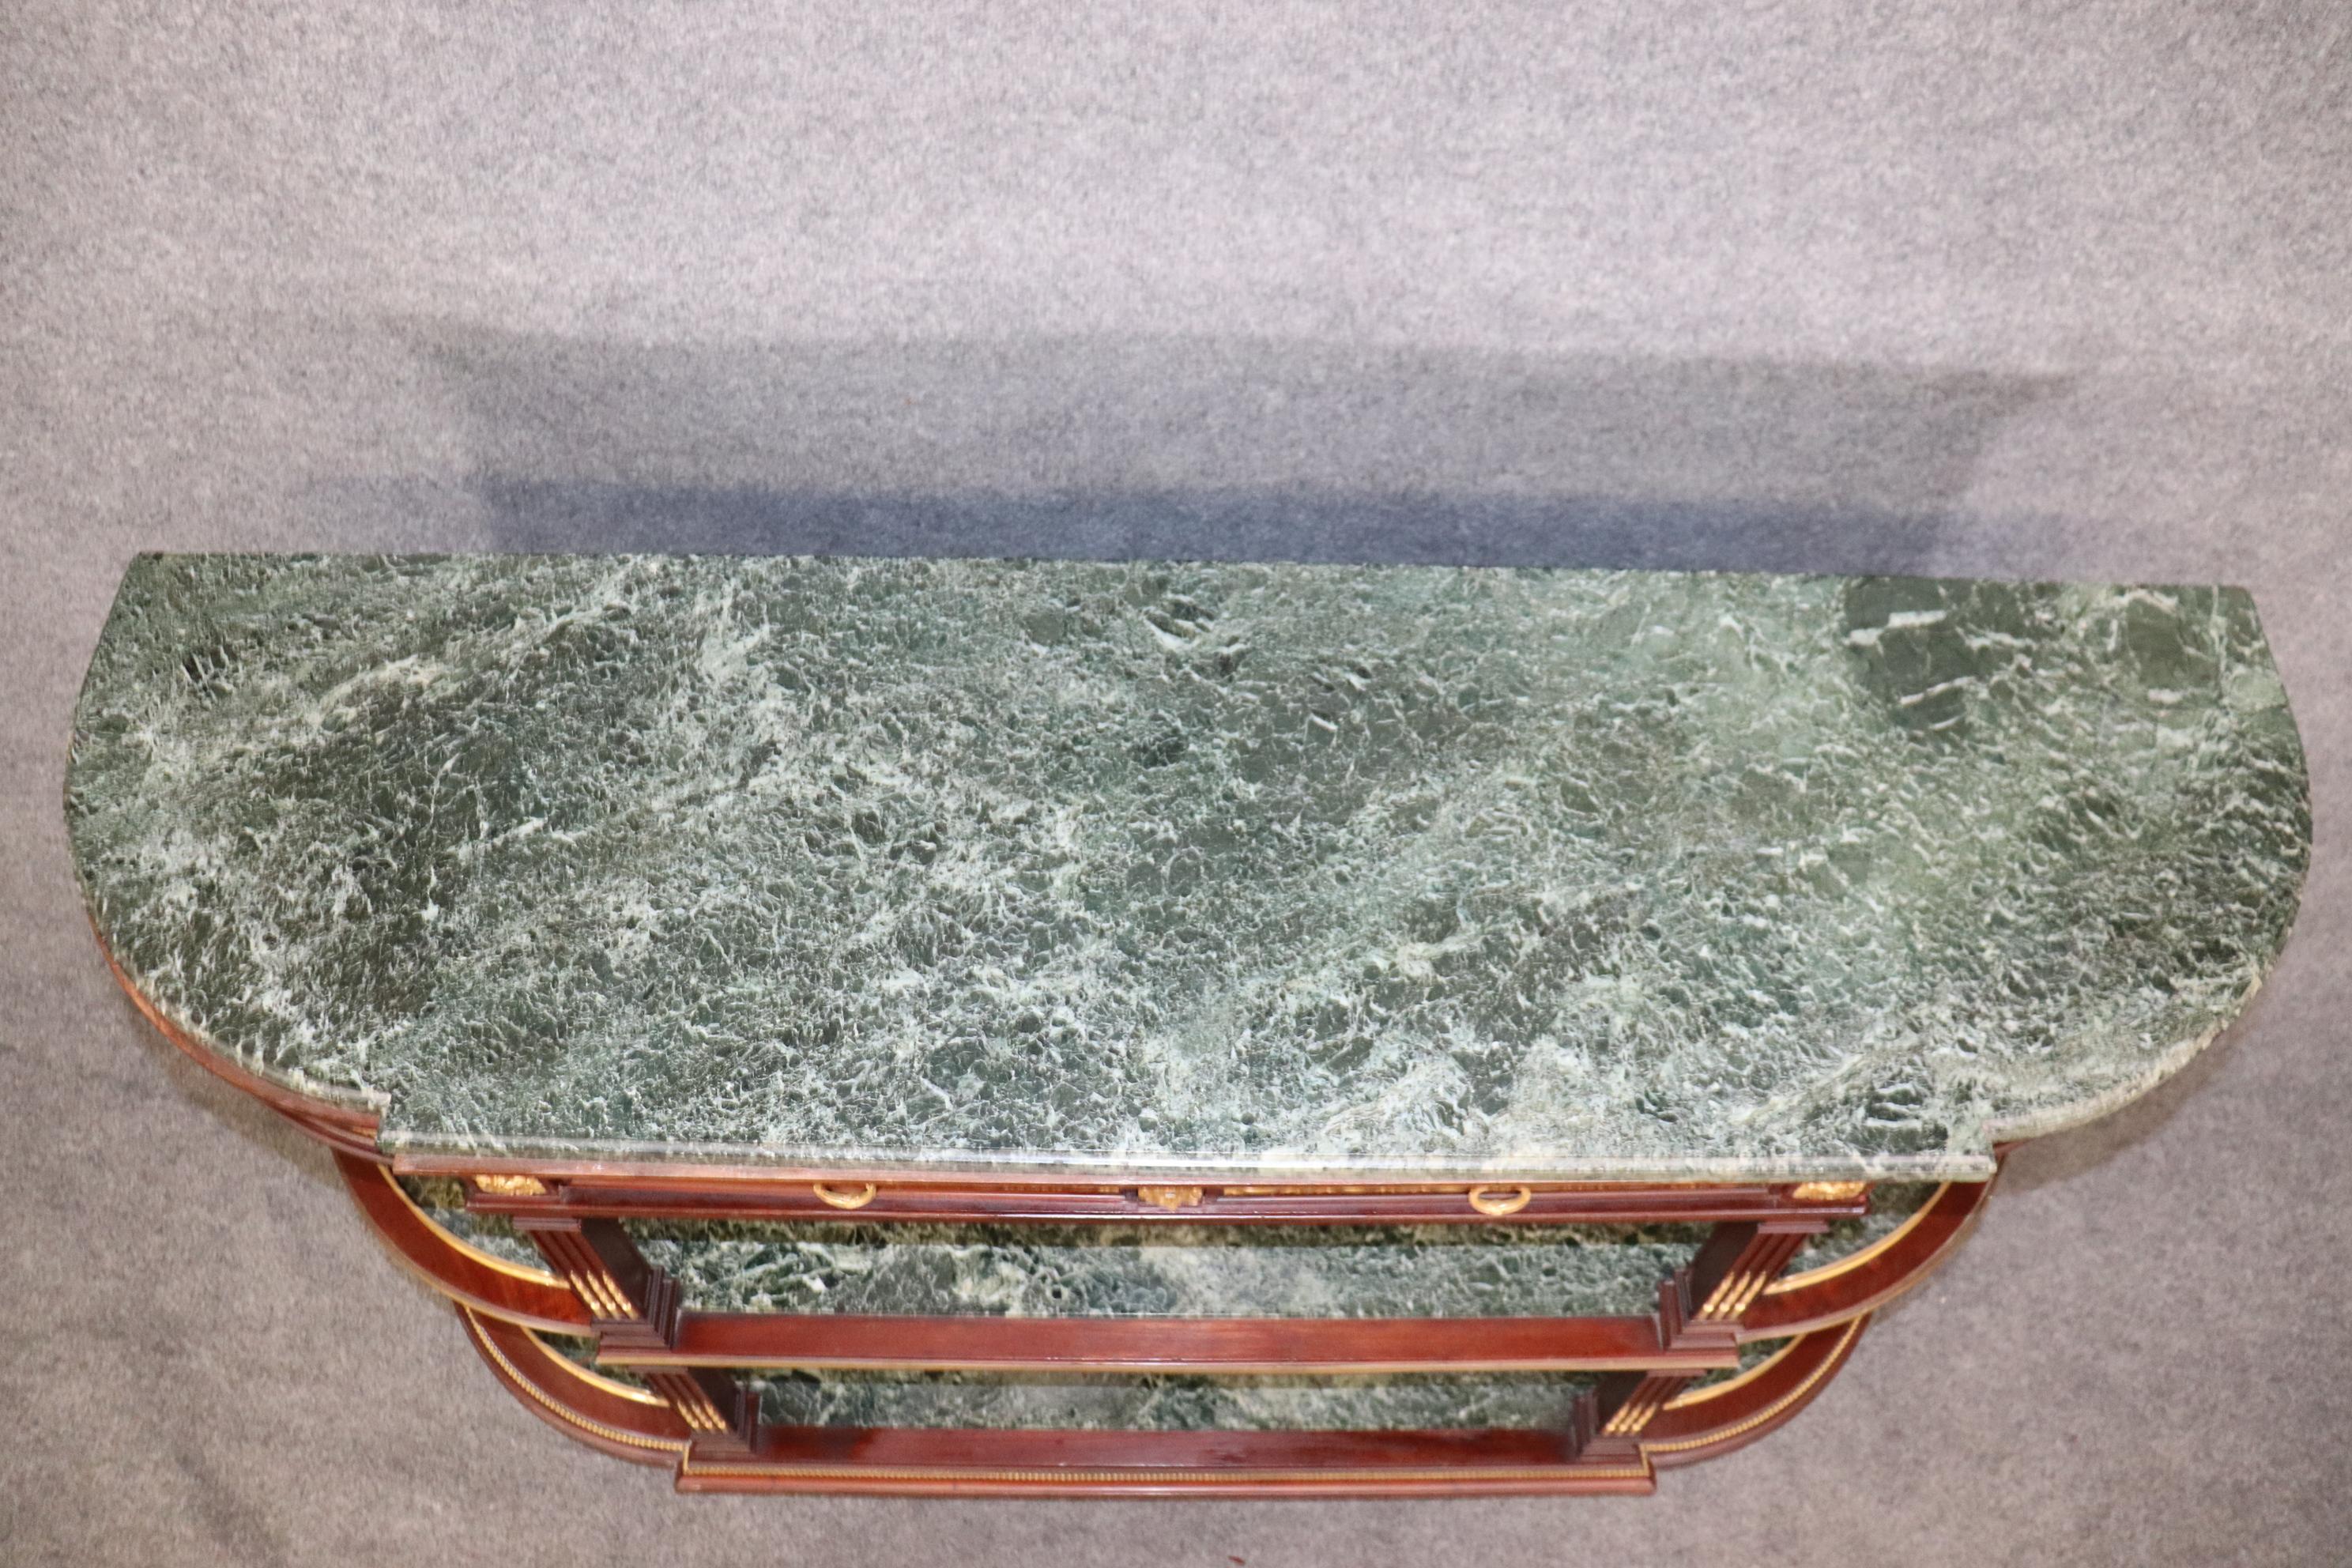 Dies ist ein fantastisches Schmuckstück von einem Sideboard! Sehen Sie sich das Ormolu aus Golddoré-Bronze, die drei Platten aus Verdi-Marmor und den Spiegel an, der alles reflektiert, was Sie auf die Regale stellen! Diese Anrichte ist 61,5 cm